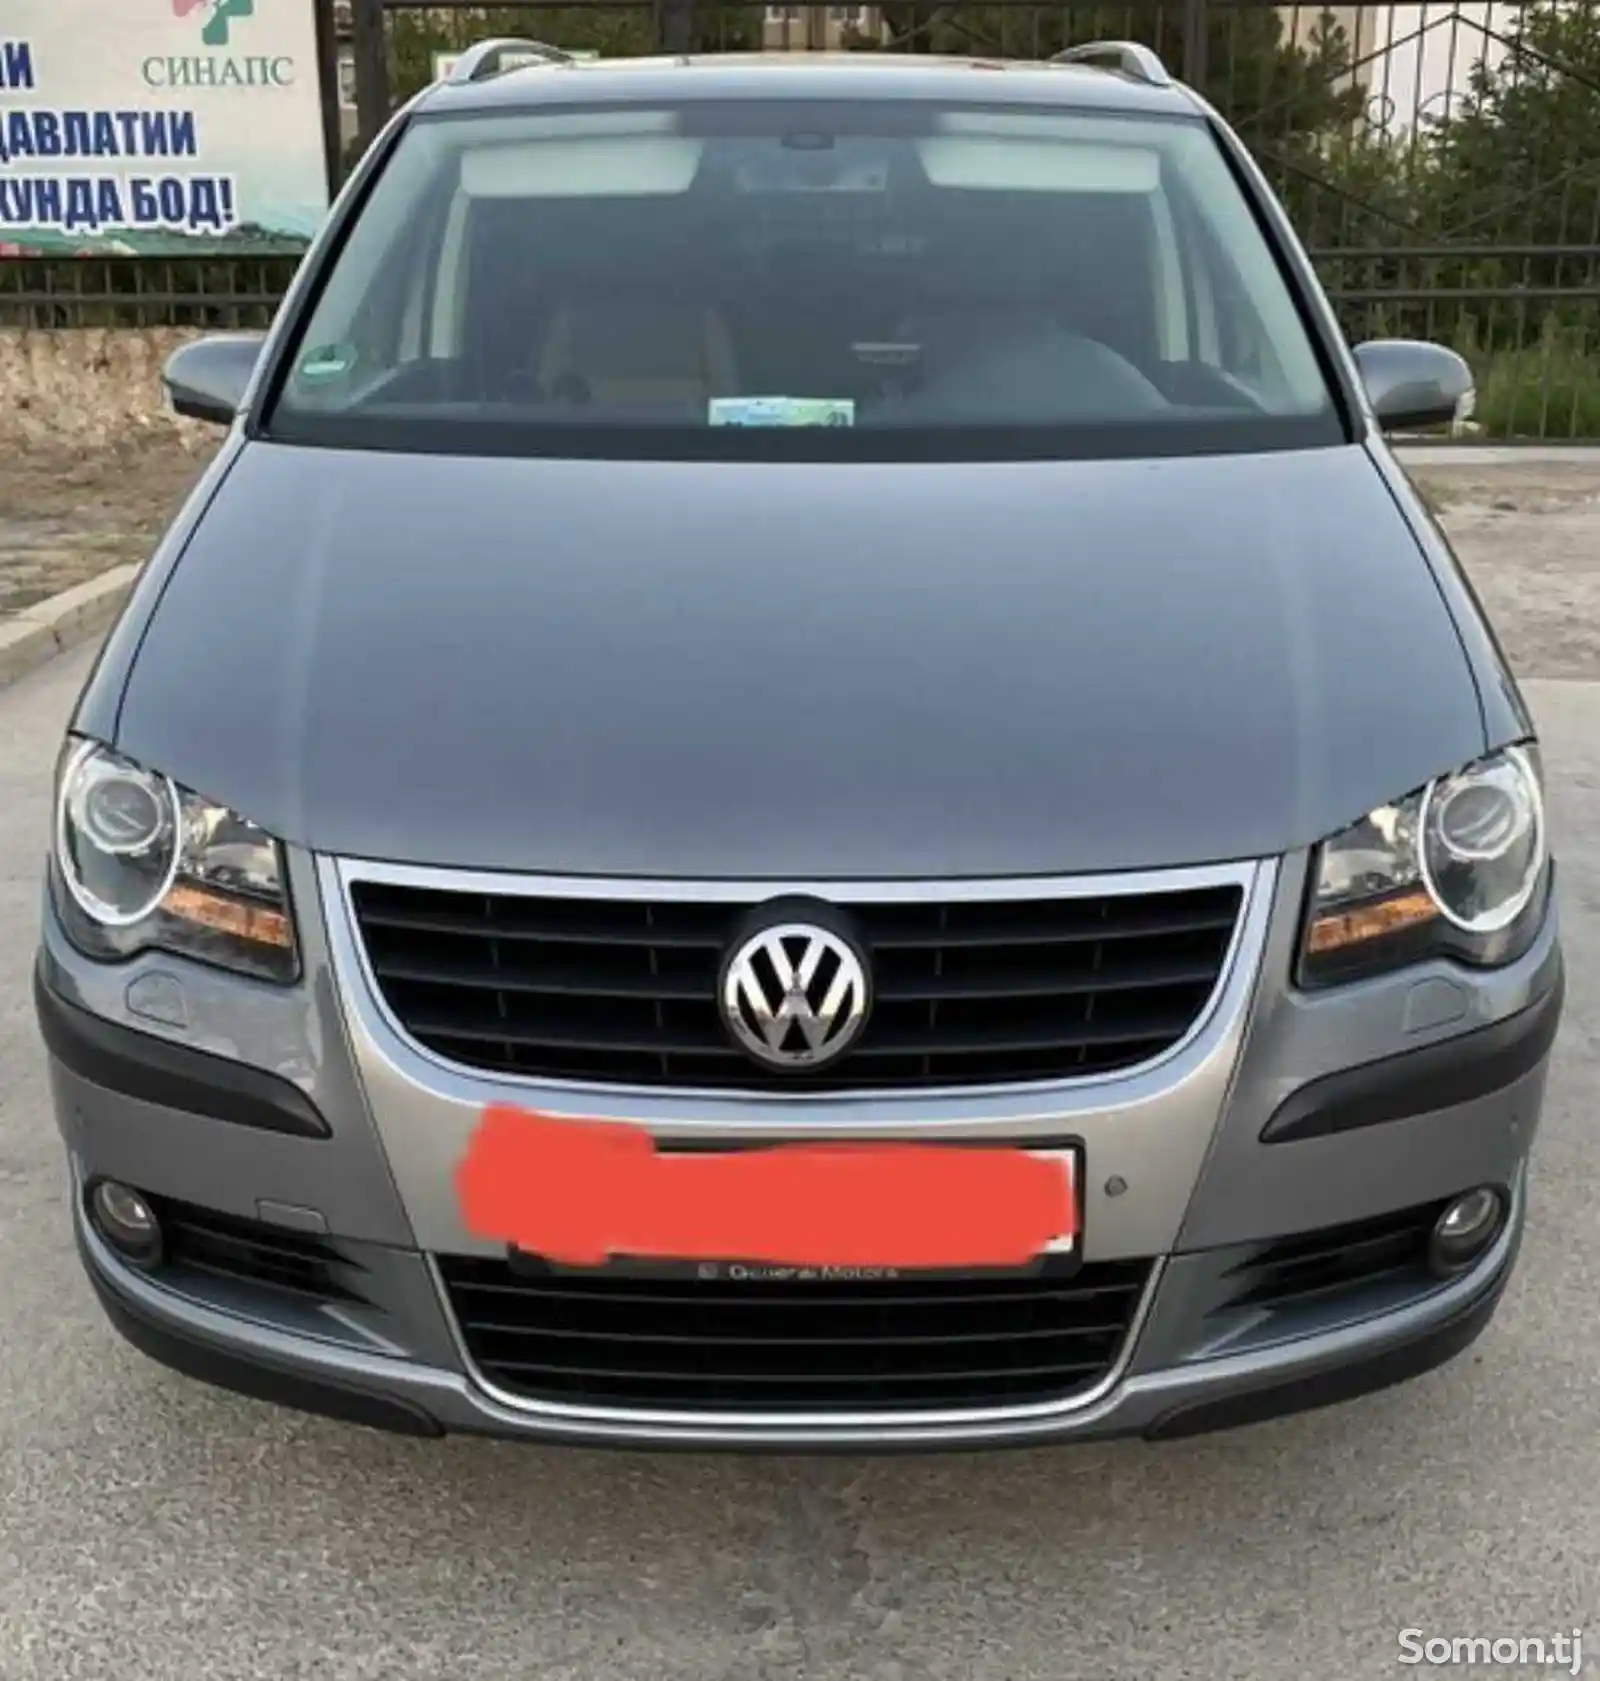 Лобовое стекло Volkswagen Touran 2007-2010